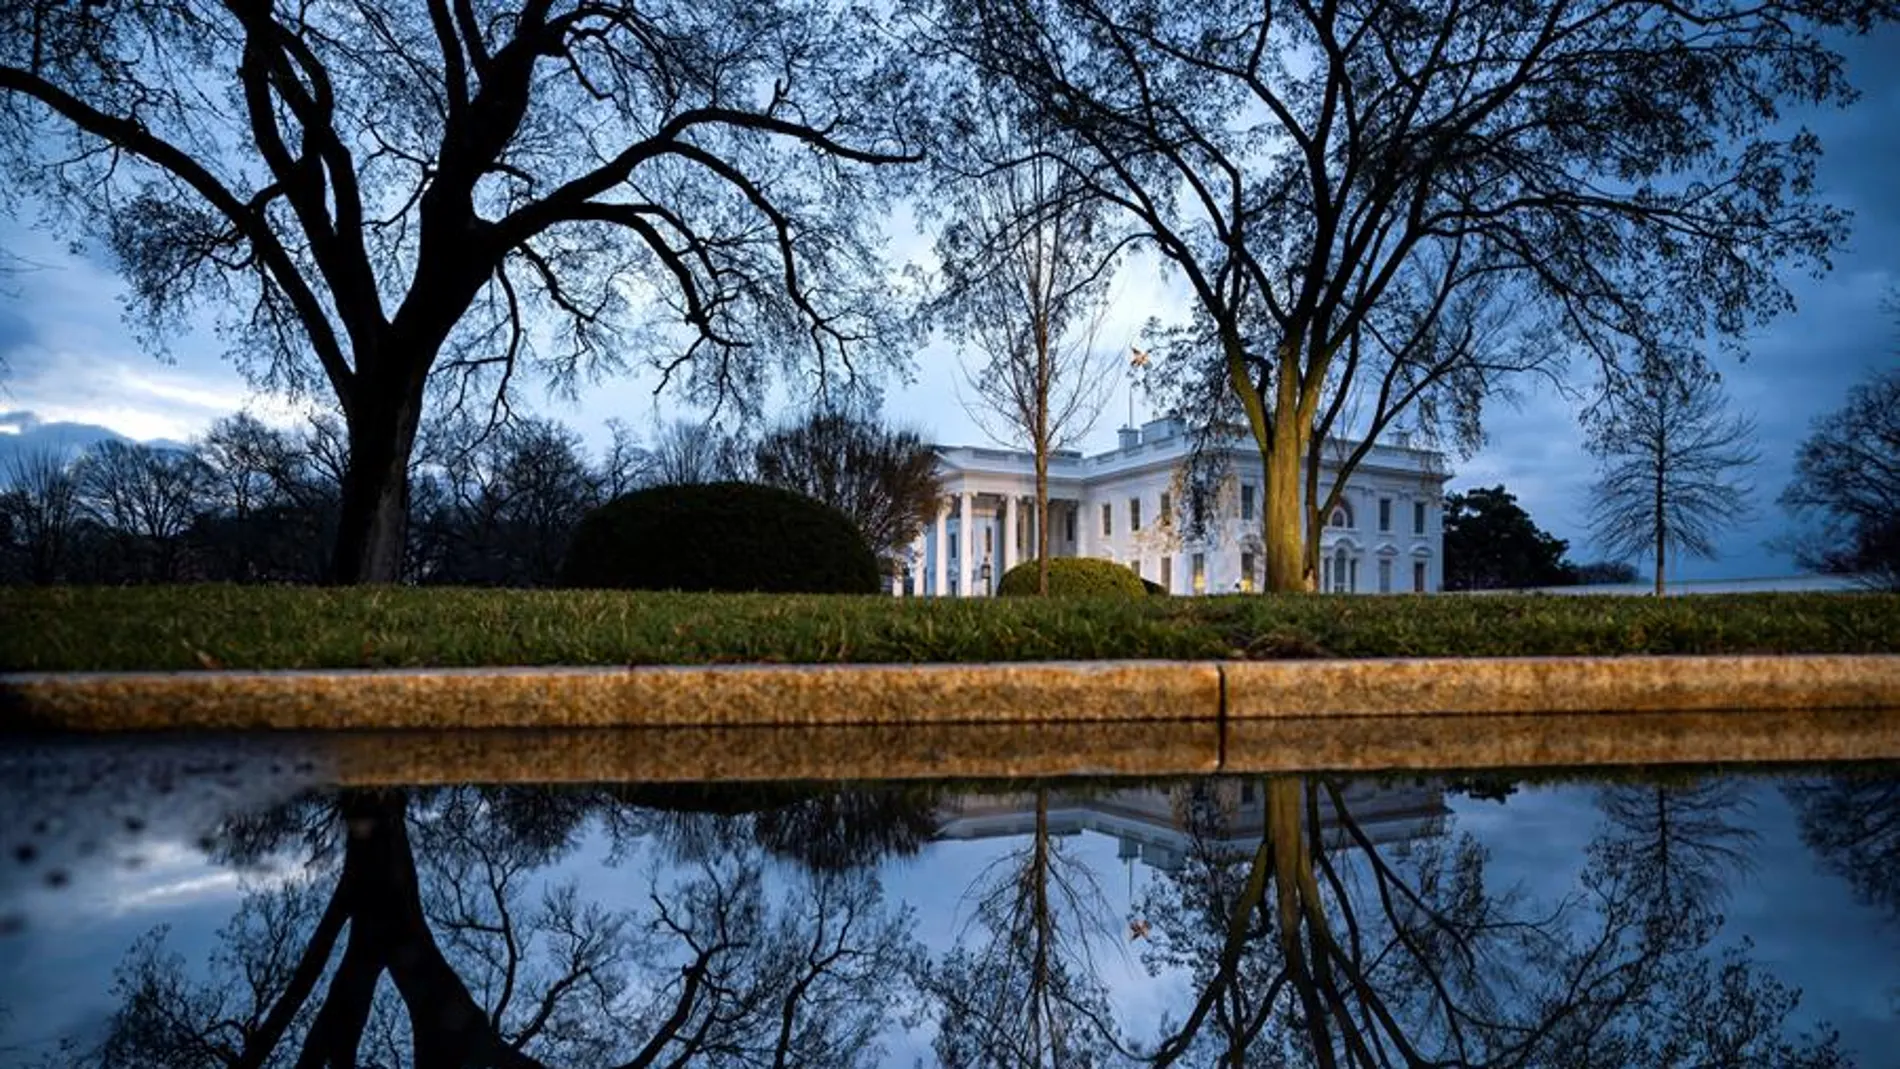 Vista general de la Casa Blanca.